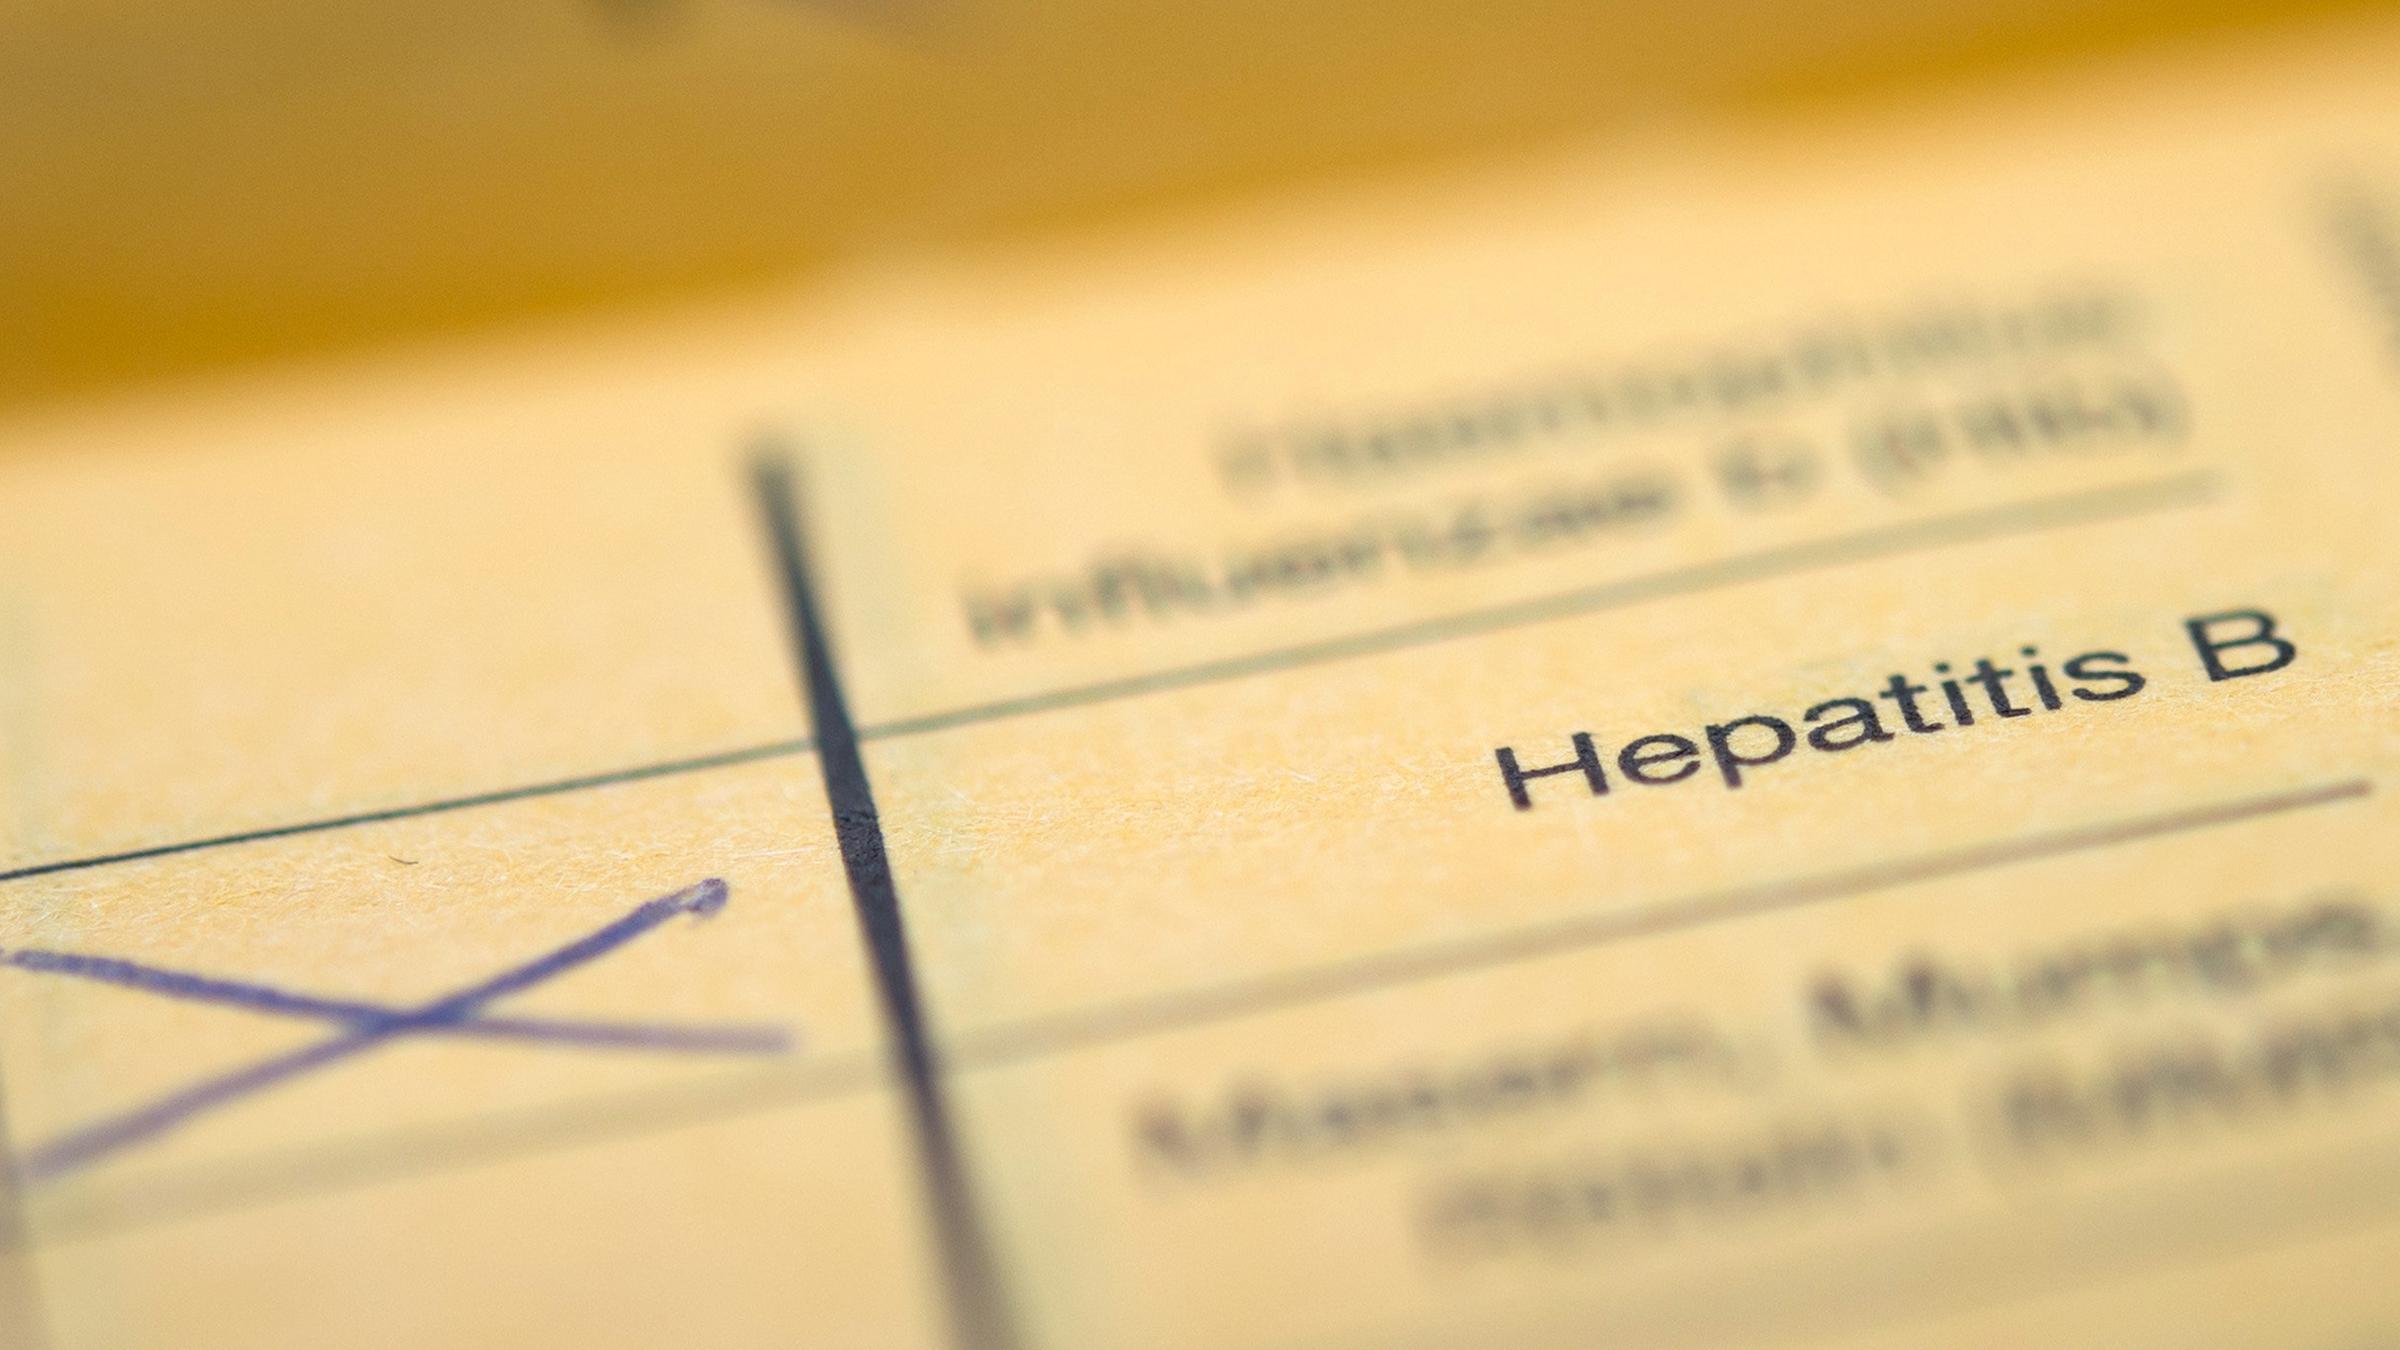 Typical: Hepatitis